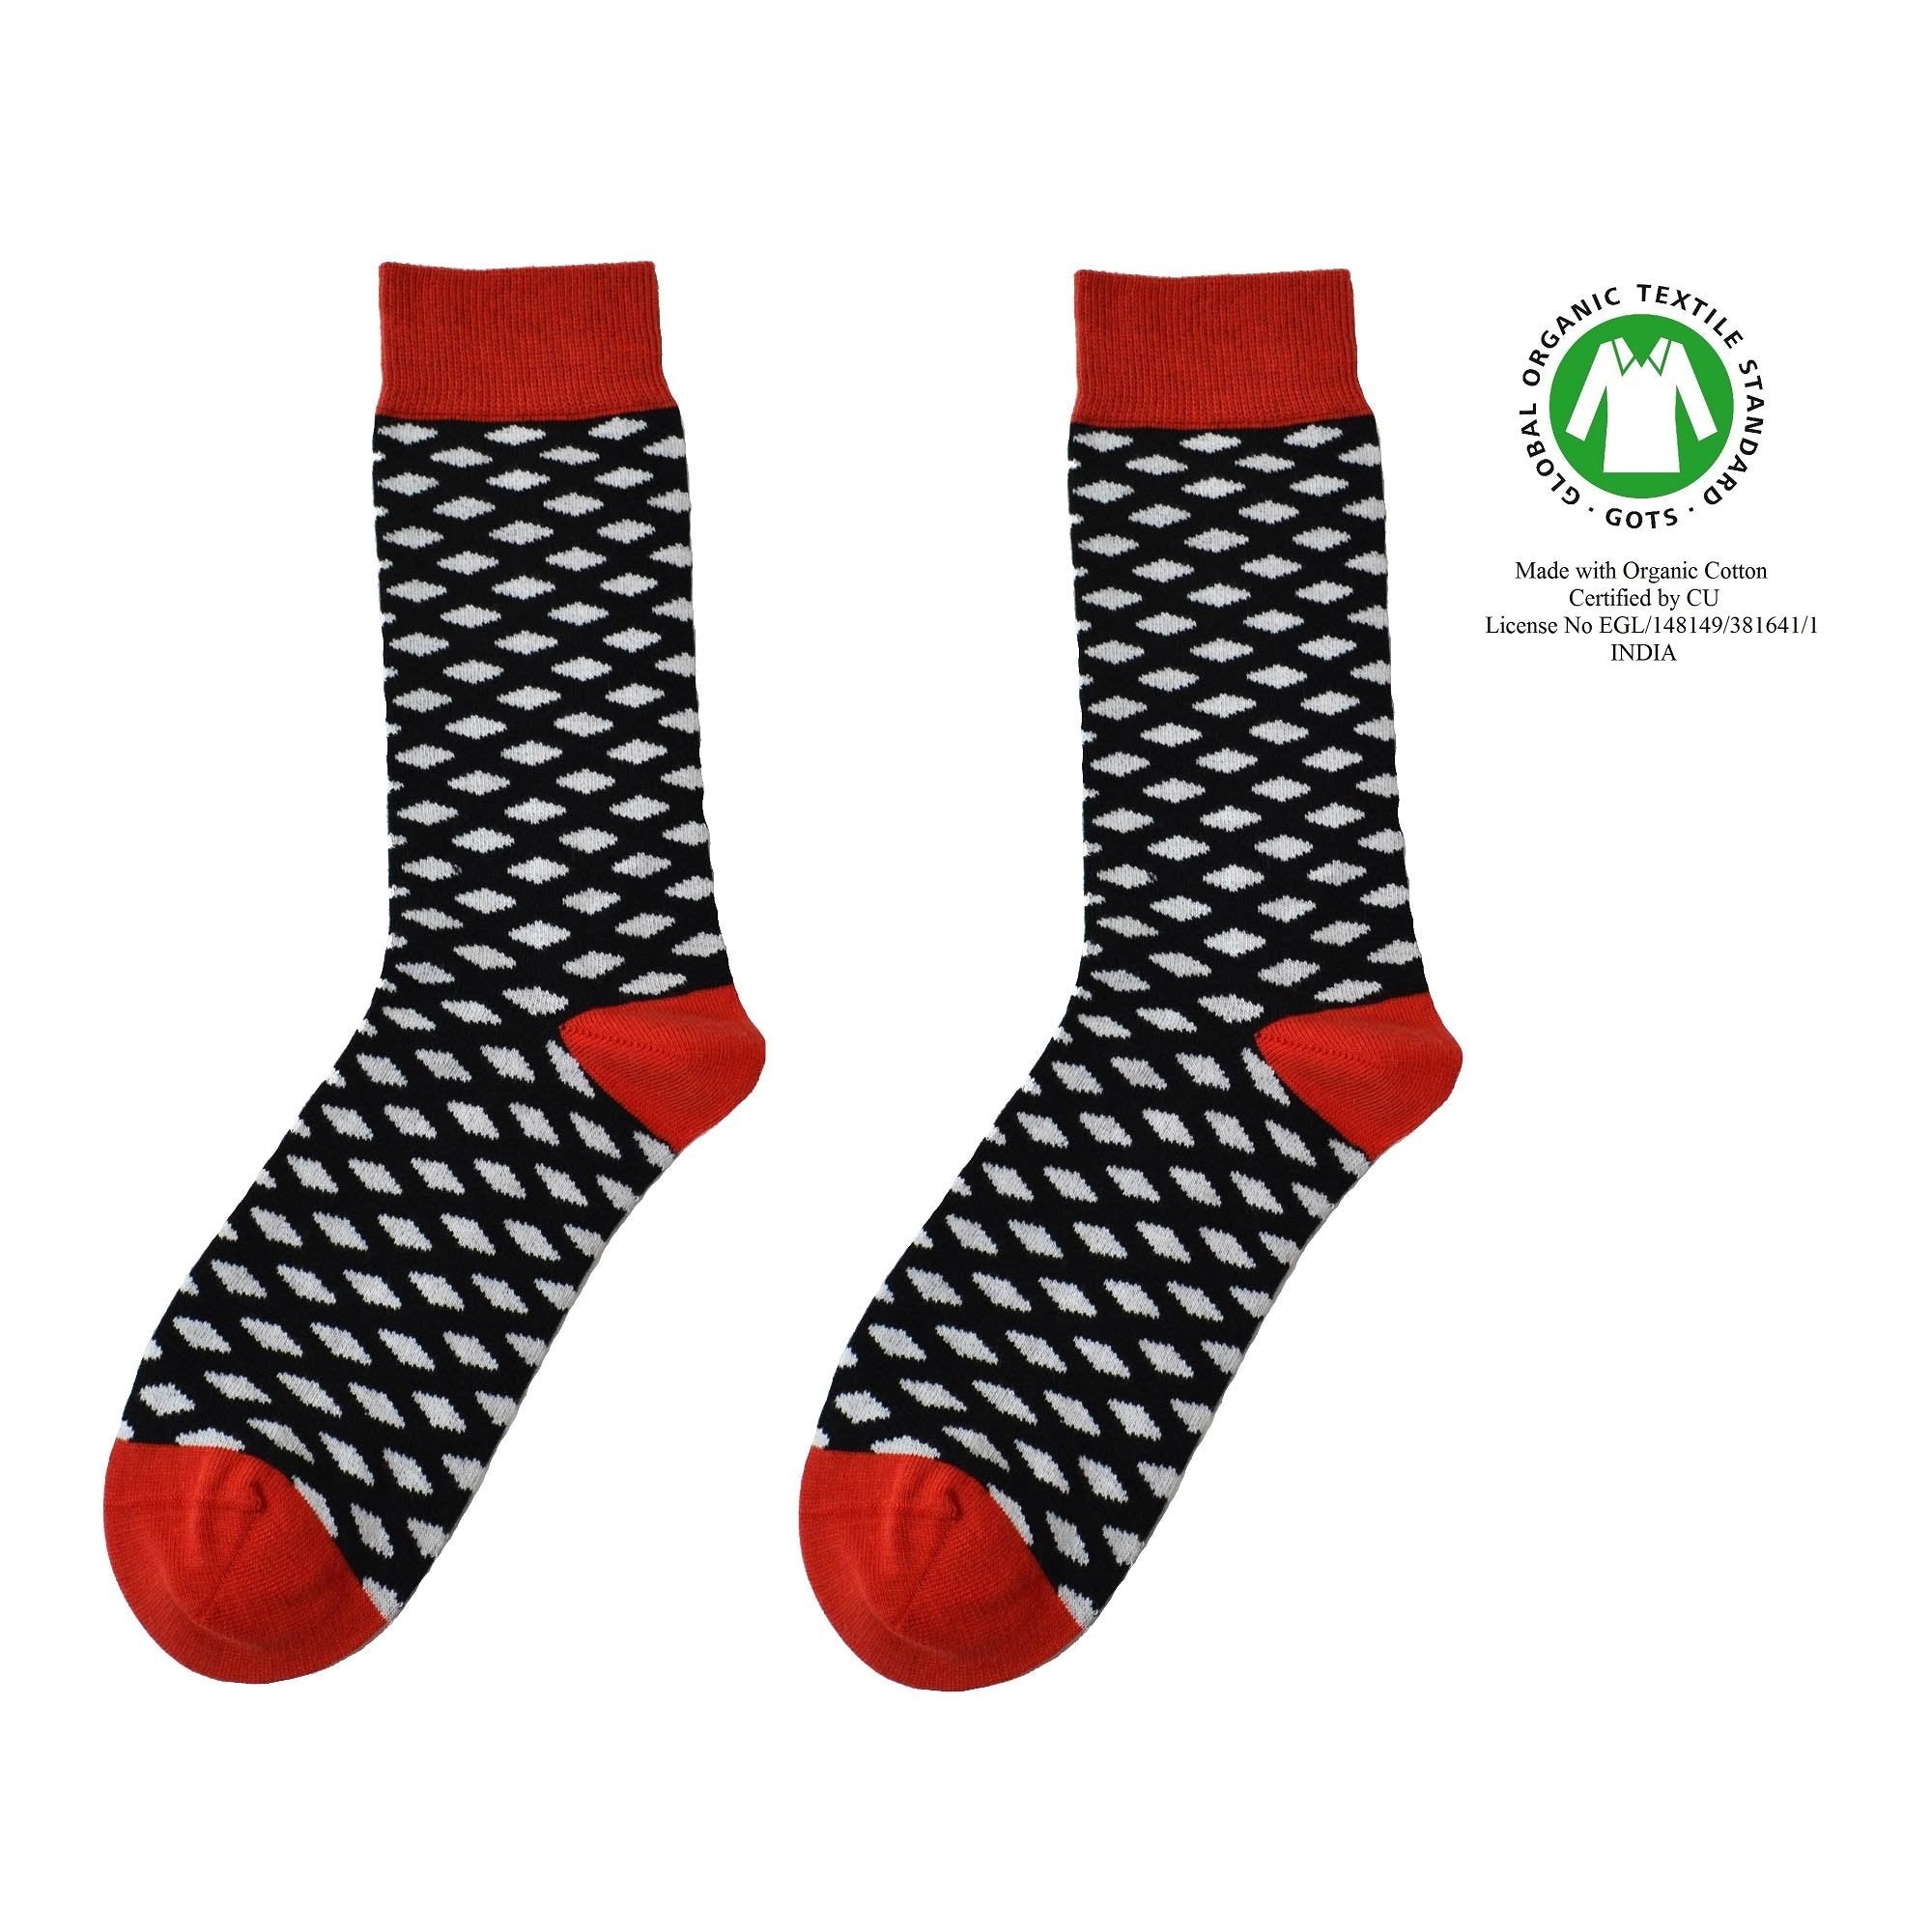 Vikberg sok - Organic socks of Sweden